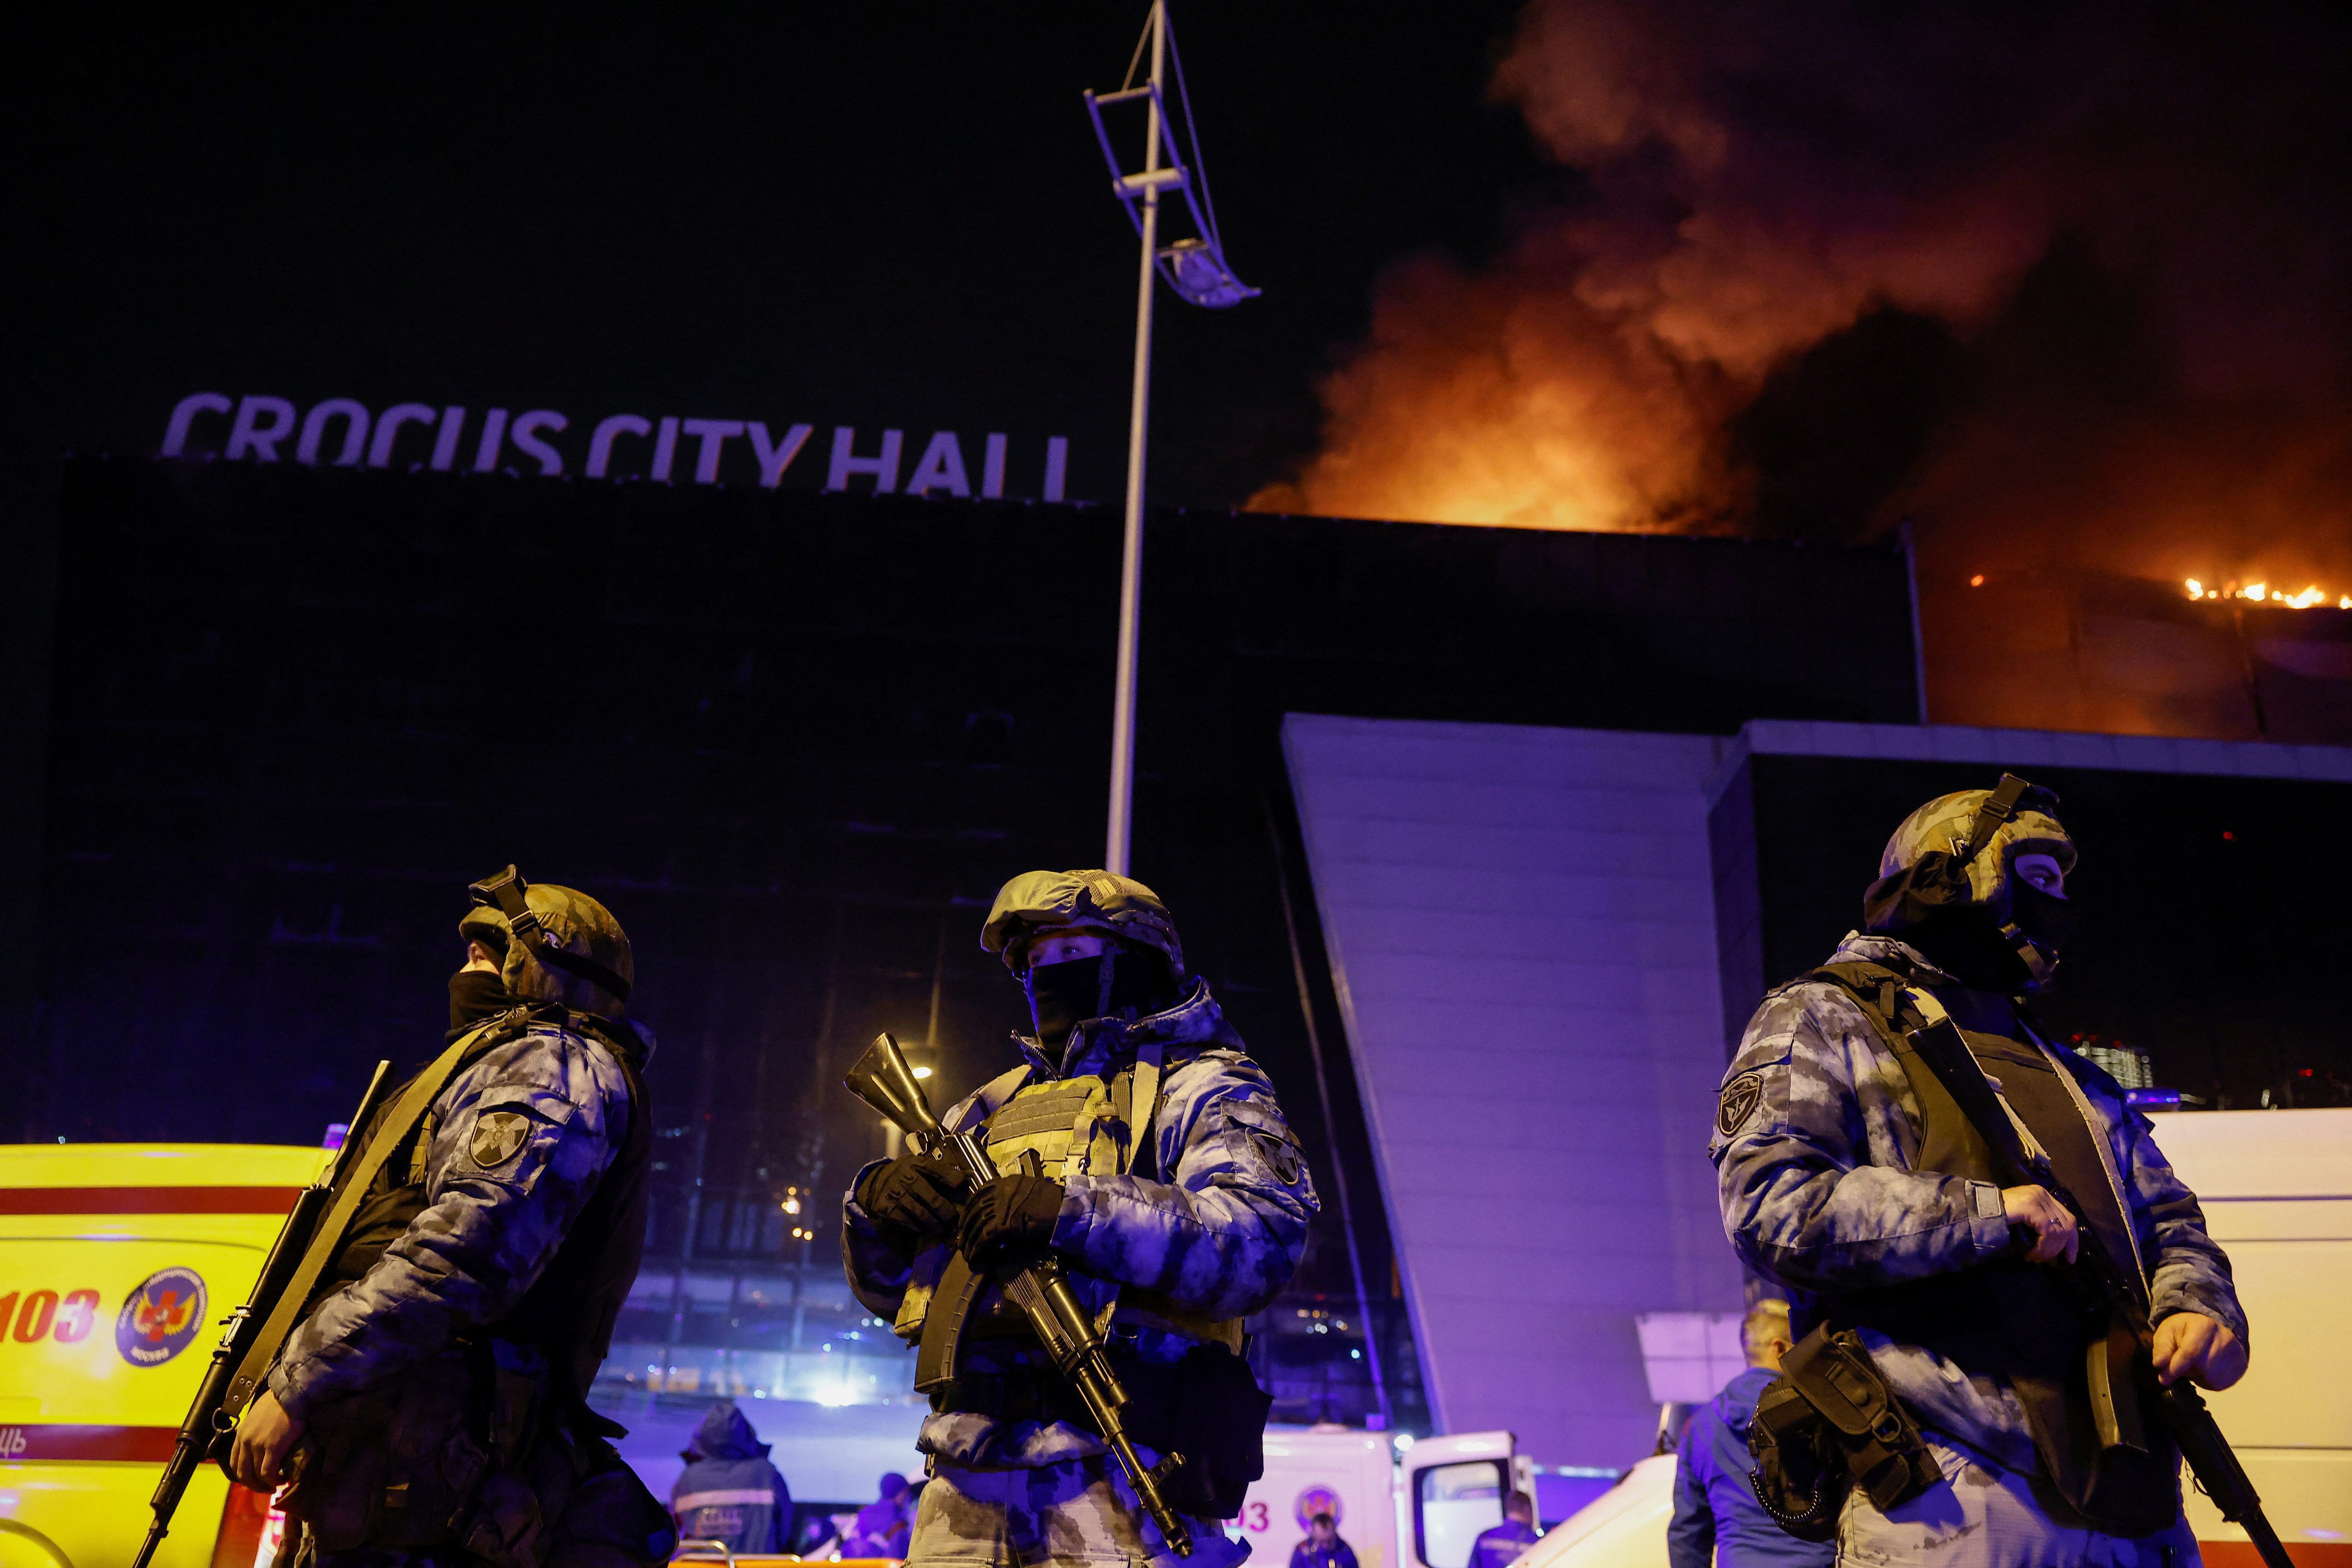 Siły bezpieczeństwa pod Krokus City Hall po ataku pod Moskwą